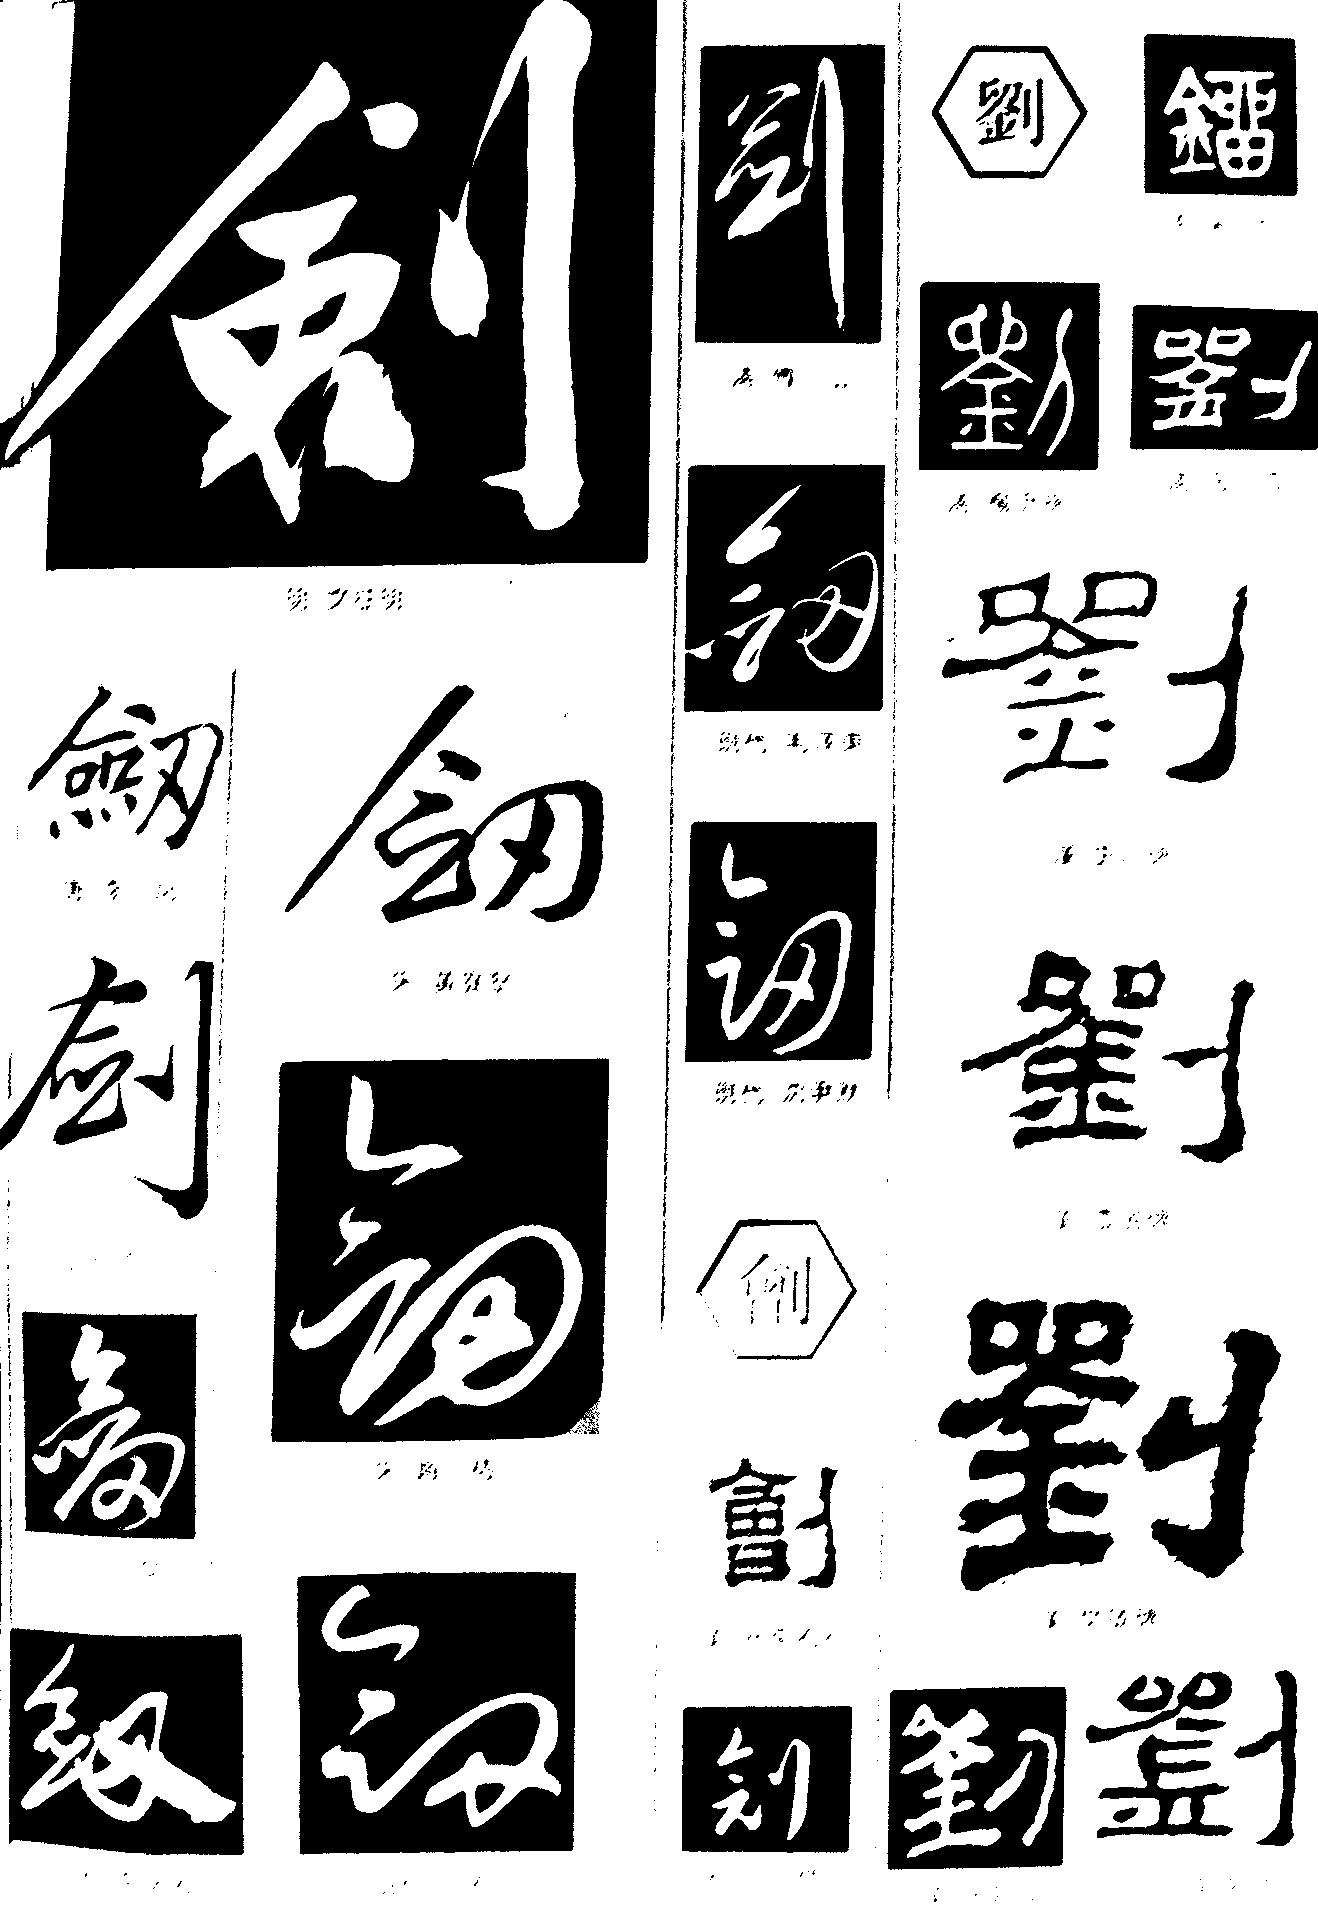 刘剑创 艺术字 毛笔字 书法字 繁体 标志设计